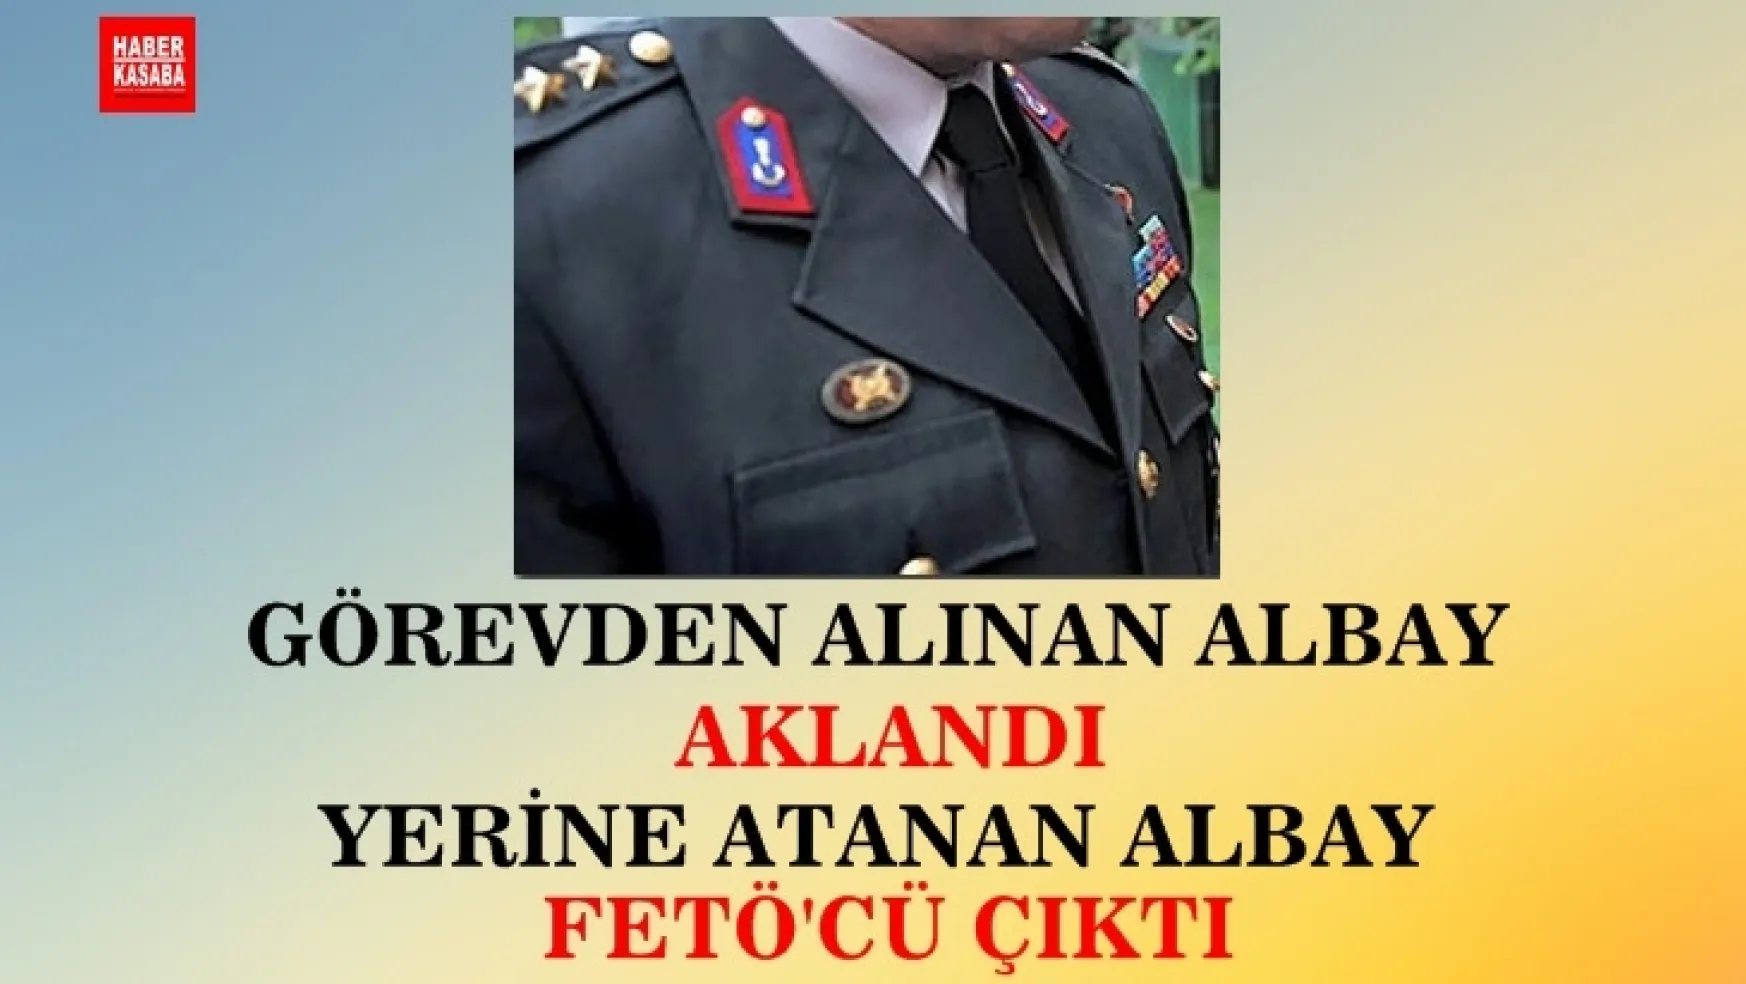 Görevden alınan Albay aklandı, yerine atanan Albay FETÖ'cü çıktı